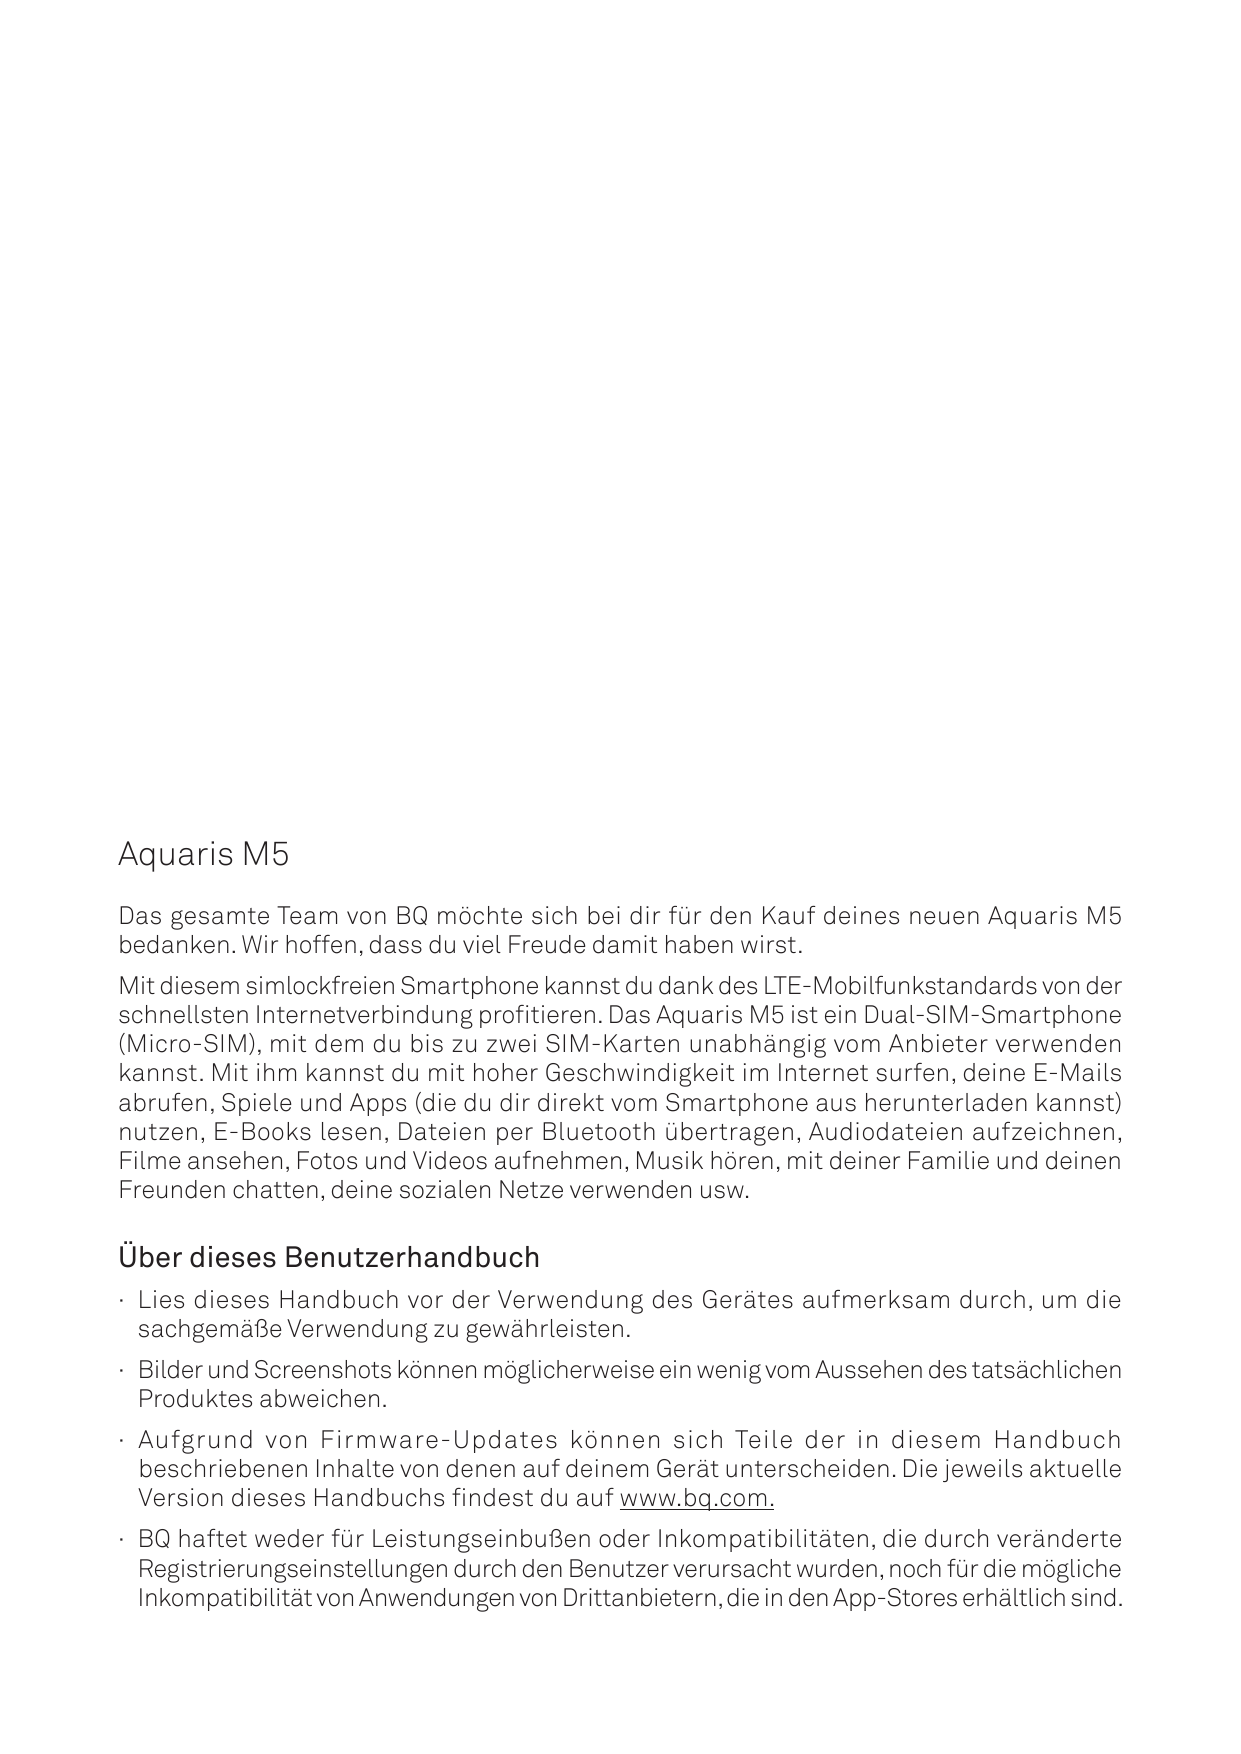 Aquaris M5Das gesamte Team von BQ möchte sich bei dir für den Kauf deines neuen Aquaris M5bedanken. Wir hoffen, dass du viel Fre